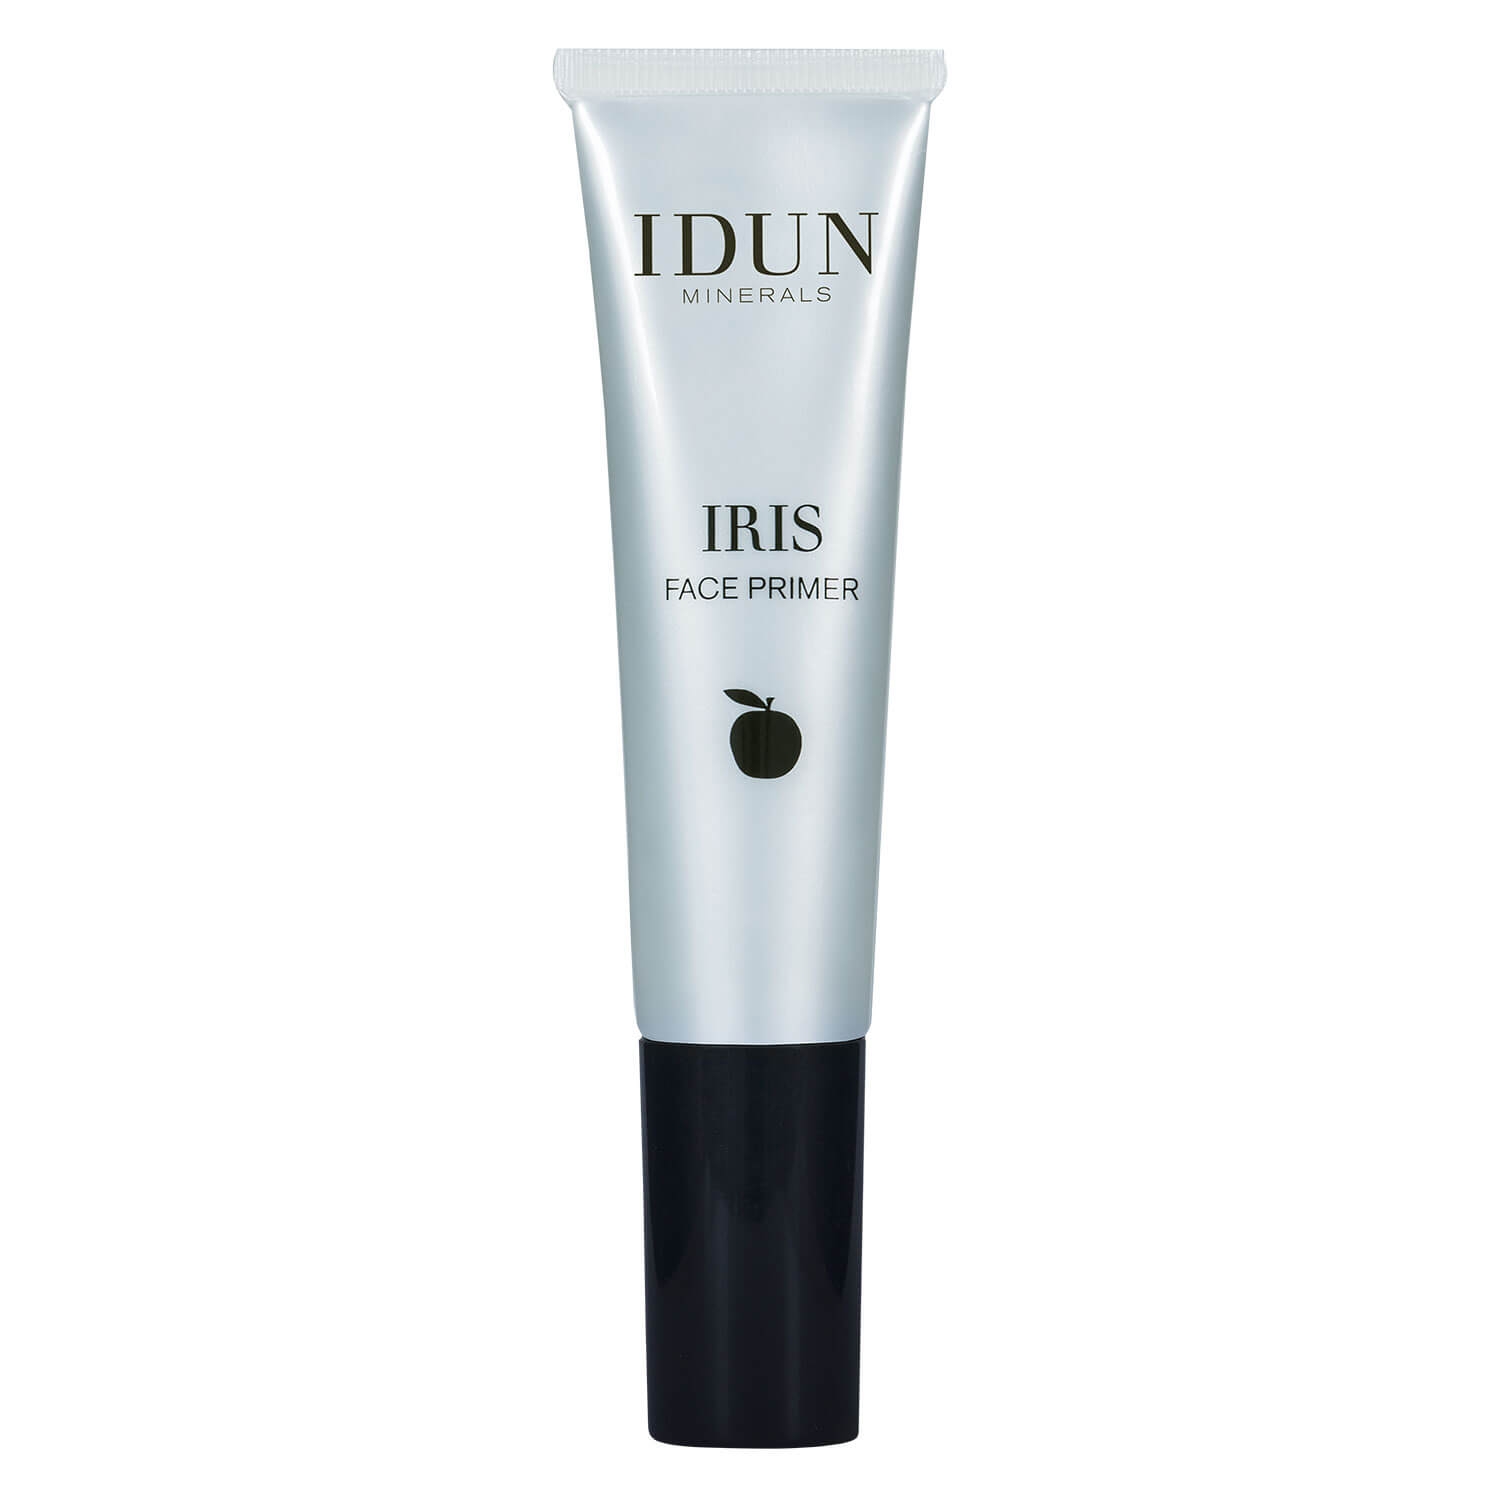 Product image from IDUN Teint - Face Primer Iris